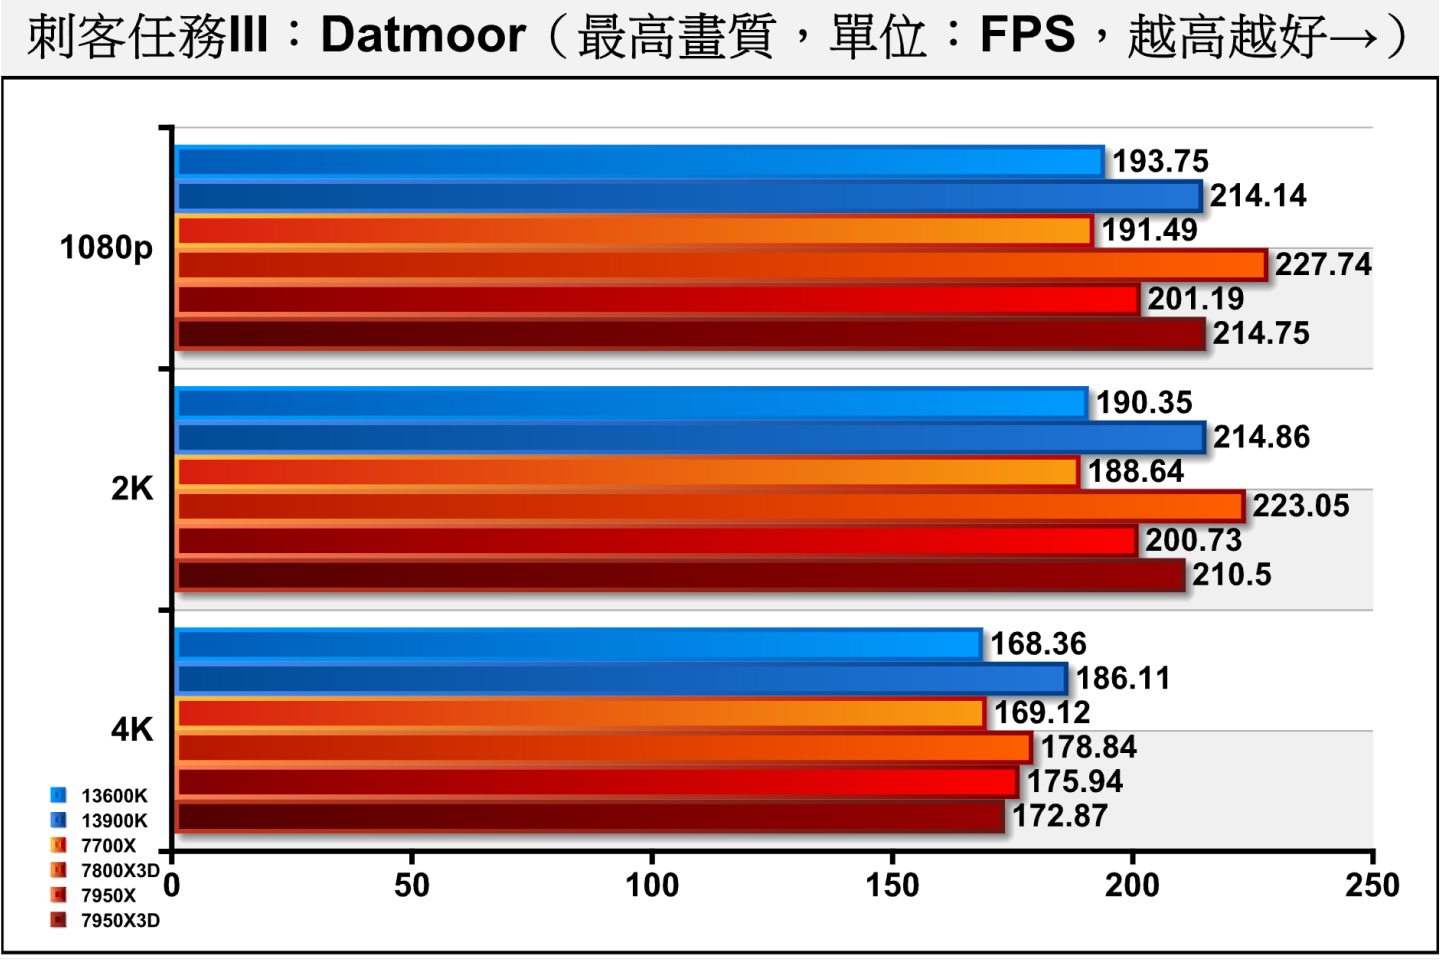 《刺客任務III》Dartmoor（達特穆爾）測試項目則包含許多槍枝射擊與爆炸效果，充滿物理與粒模擬，對處理器與顯示卡的考驗更加嚴苛。7800X3D在1080p、2K解析度的效能皆可超越13900K。